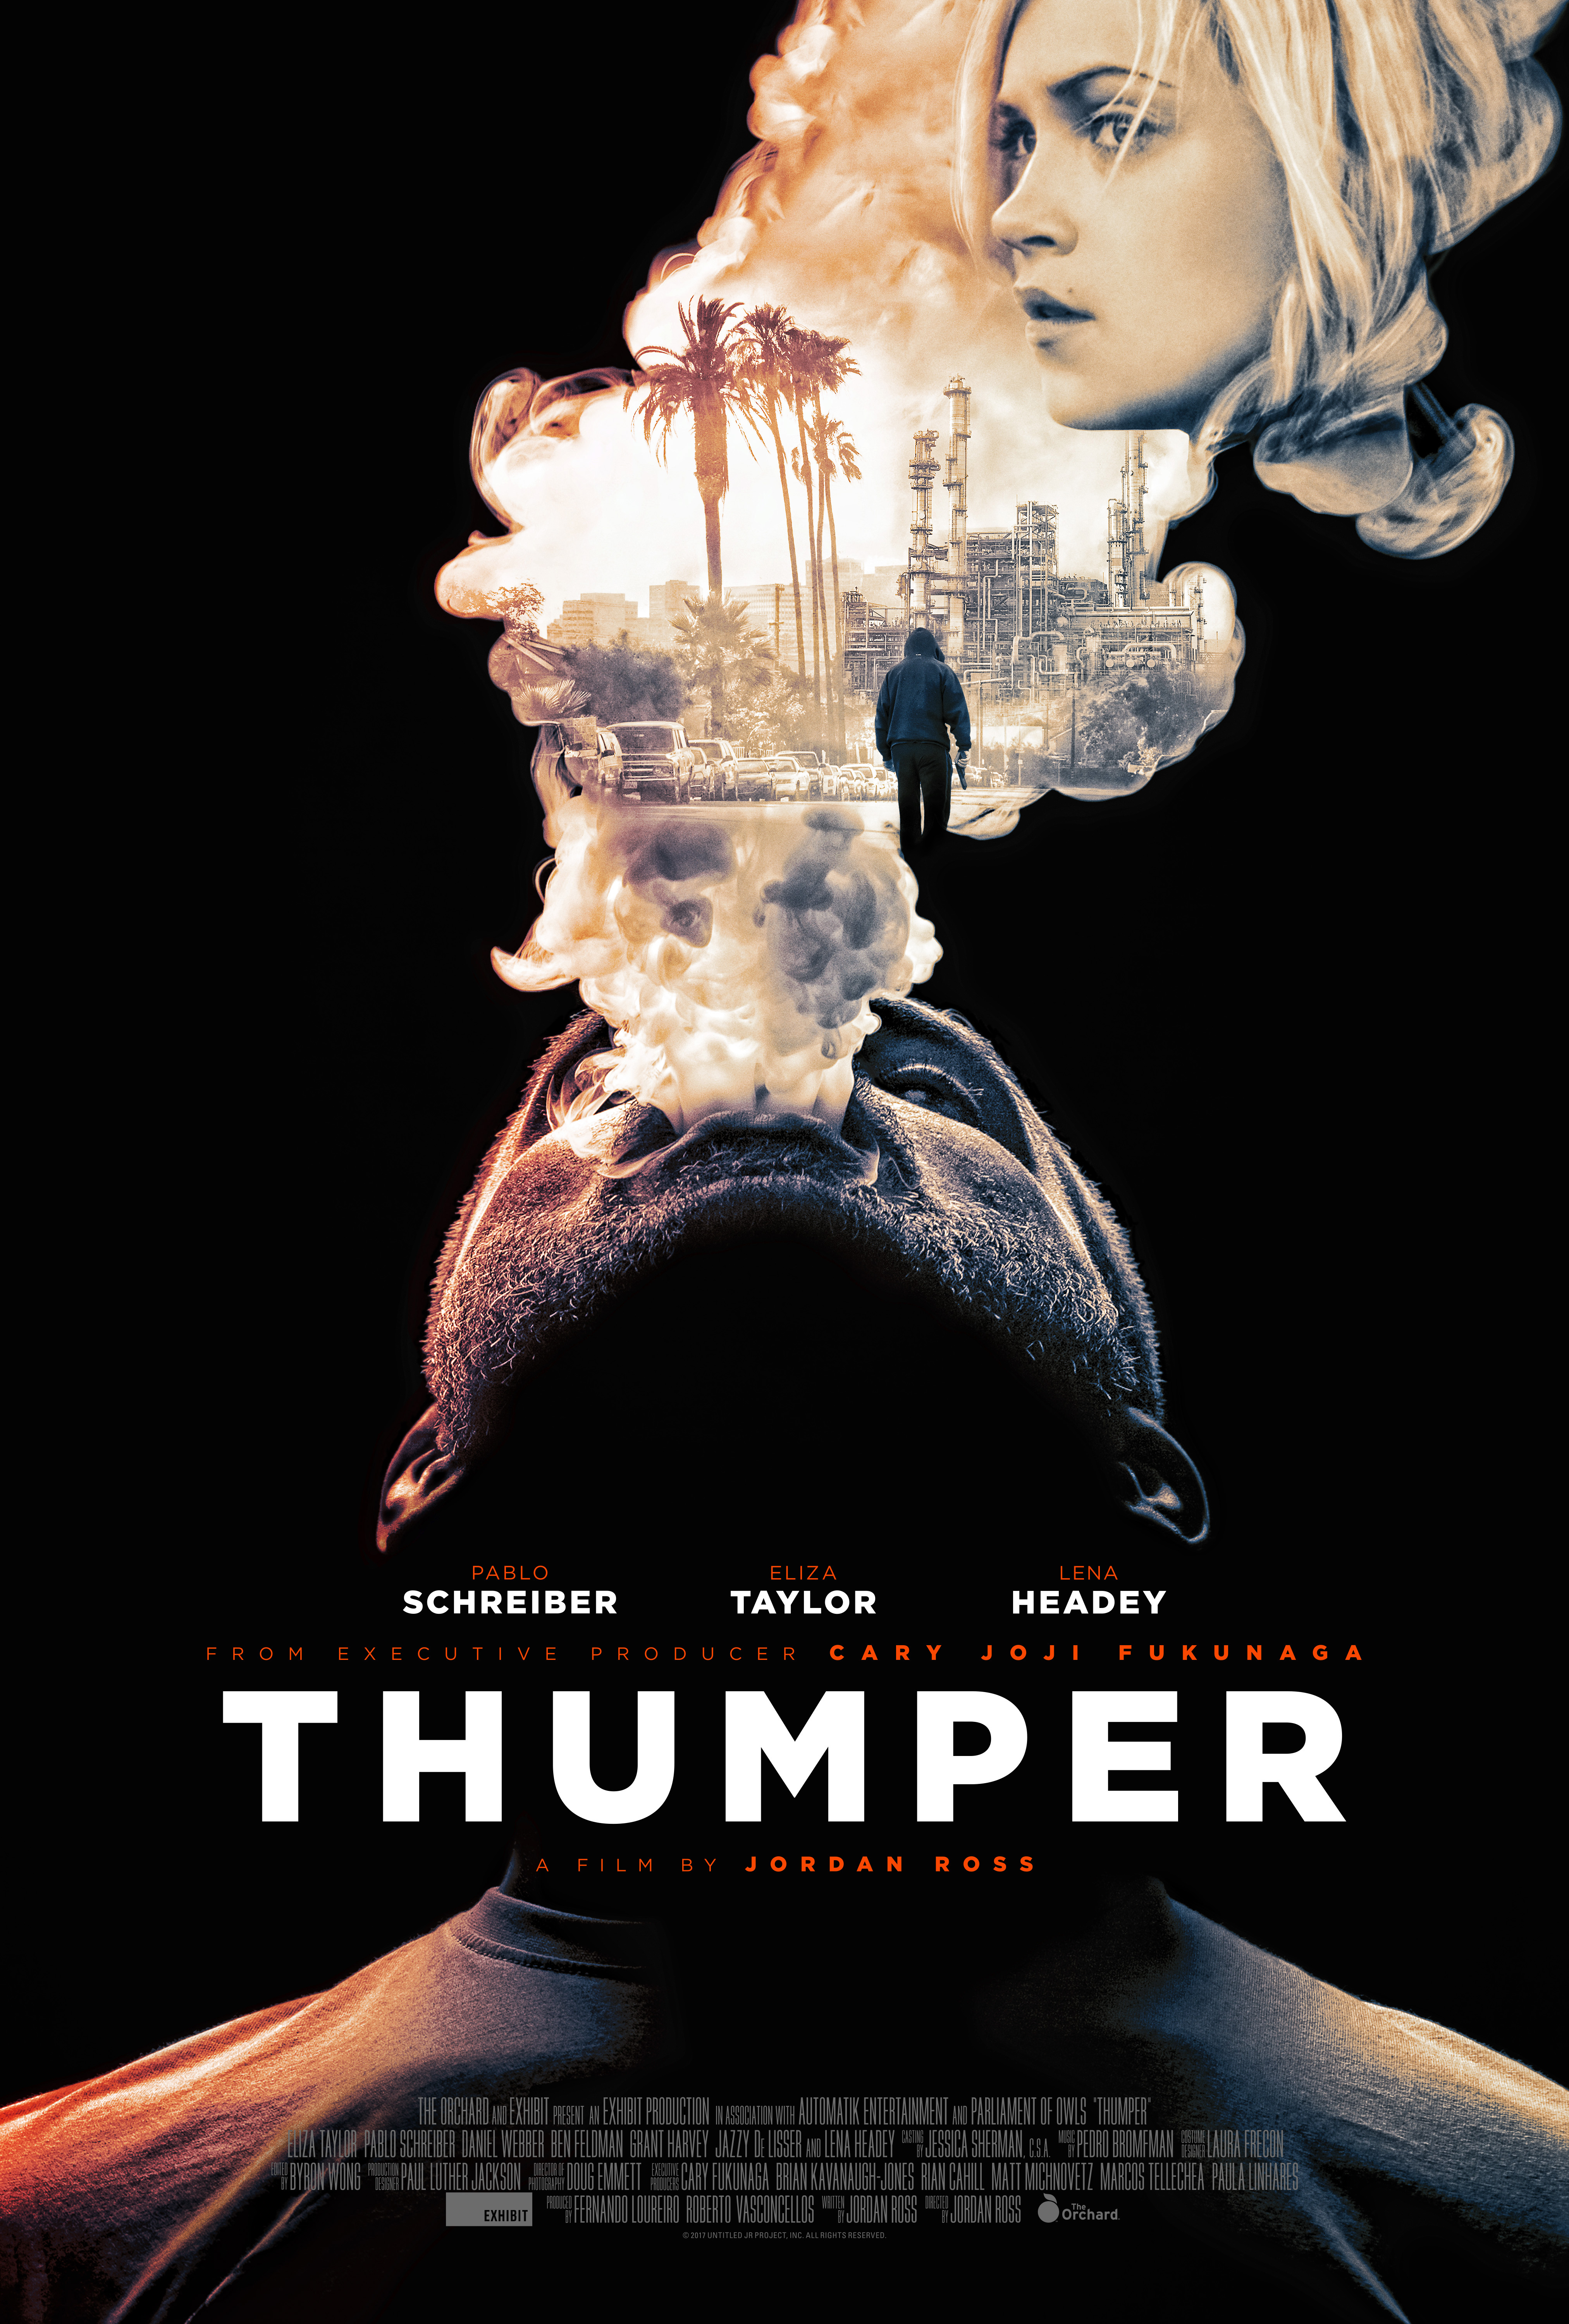 Nonton film Thumper layarkaca21 indoxx1 ganool online streaming terbaru